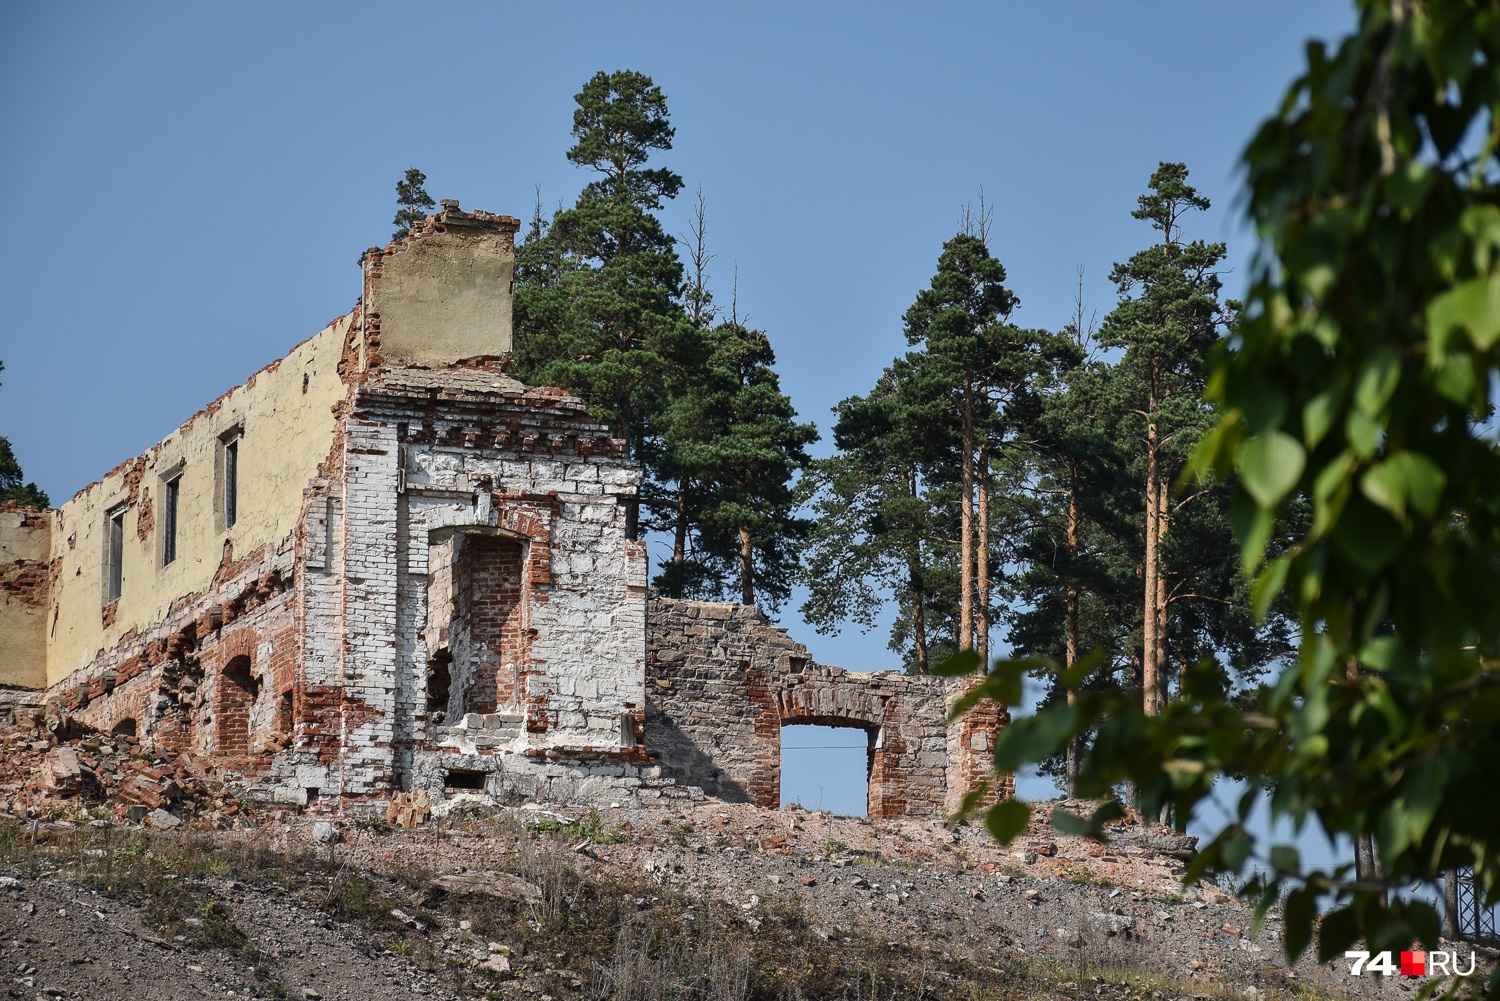 В Катав-Ивановске встречают эффектные руины, но землетрясение тут ни при чём